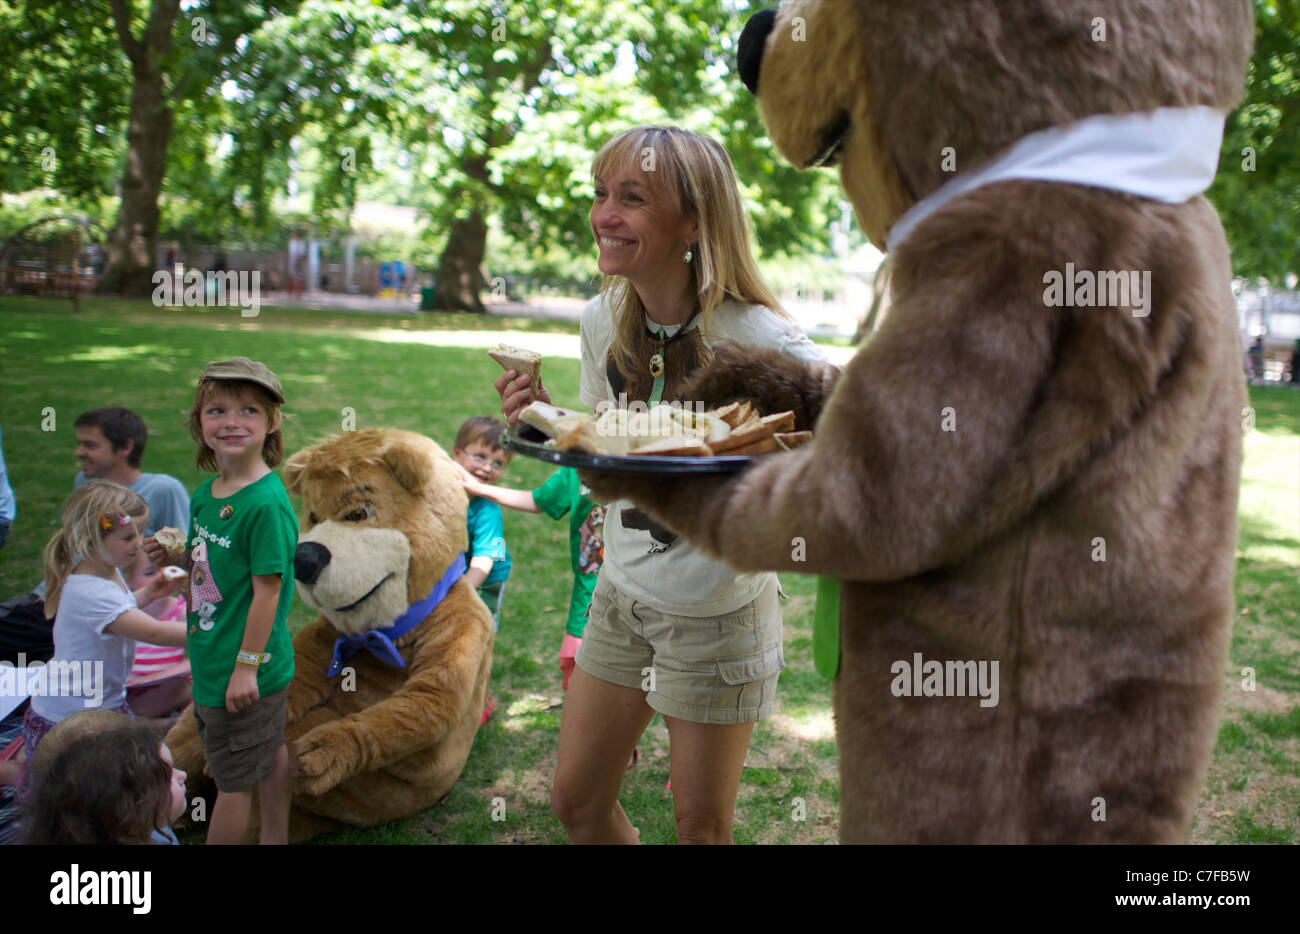 Orso Yogi, Boo Boo e la vita selvatica presenter Michaela Strachan avente un picnic con i bambini nazionale per lanciare pic-A-Nic Settimana Foto Stock